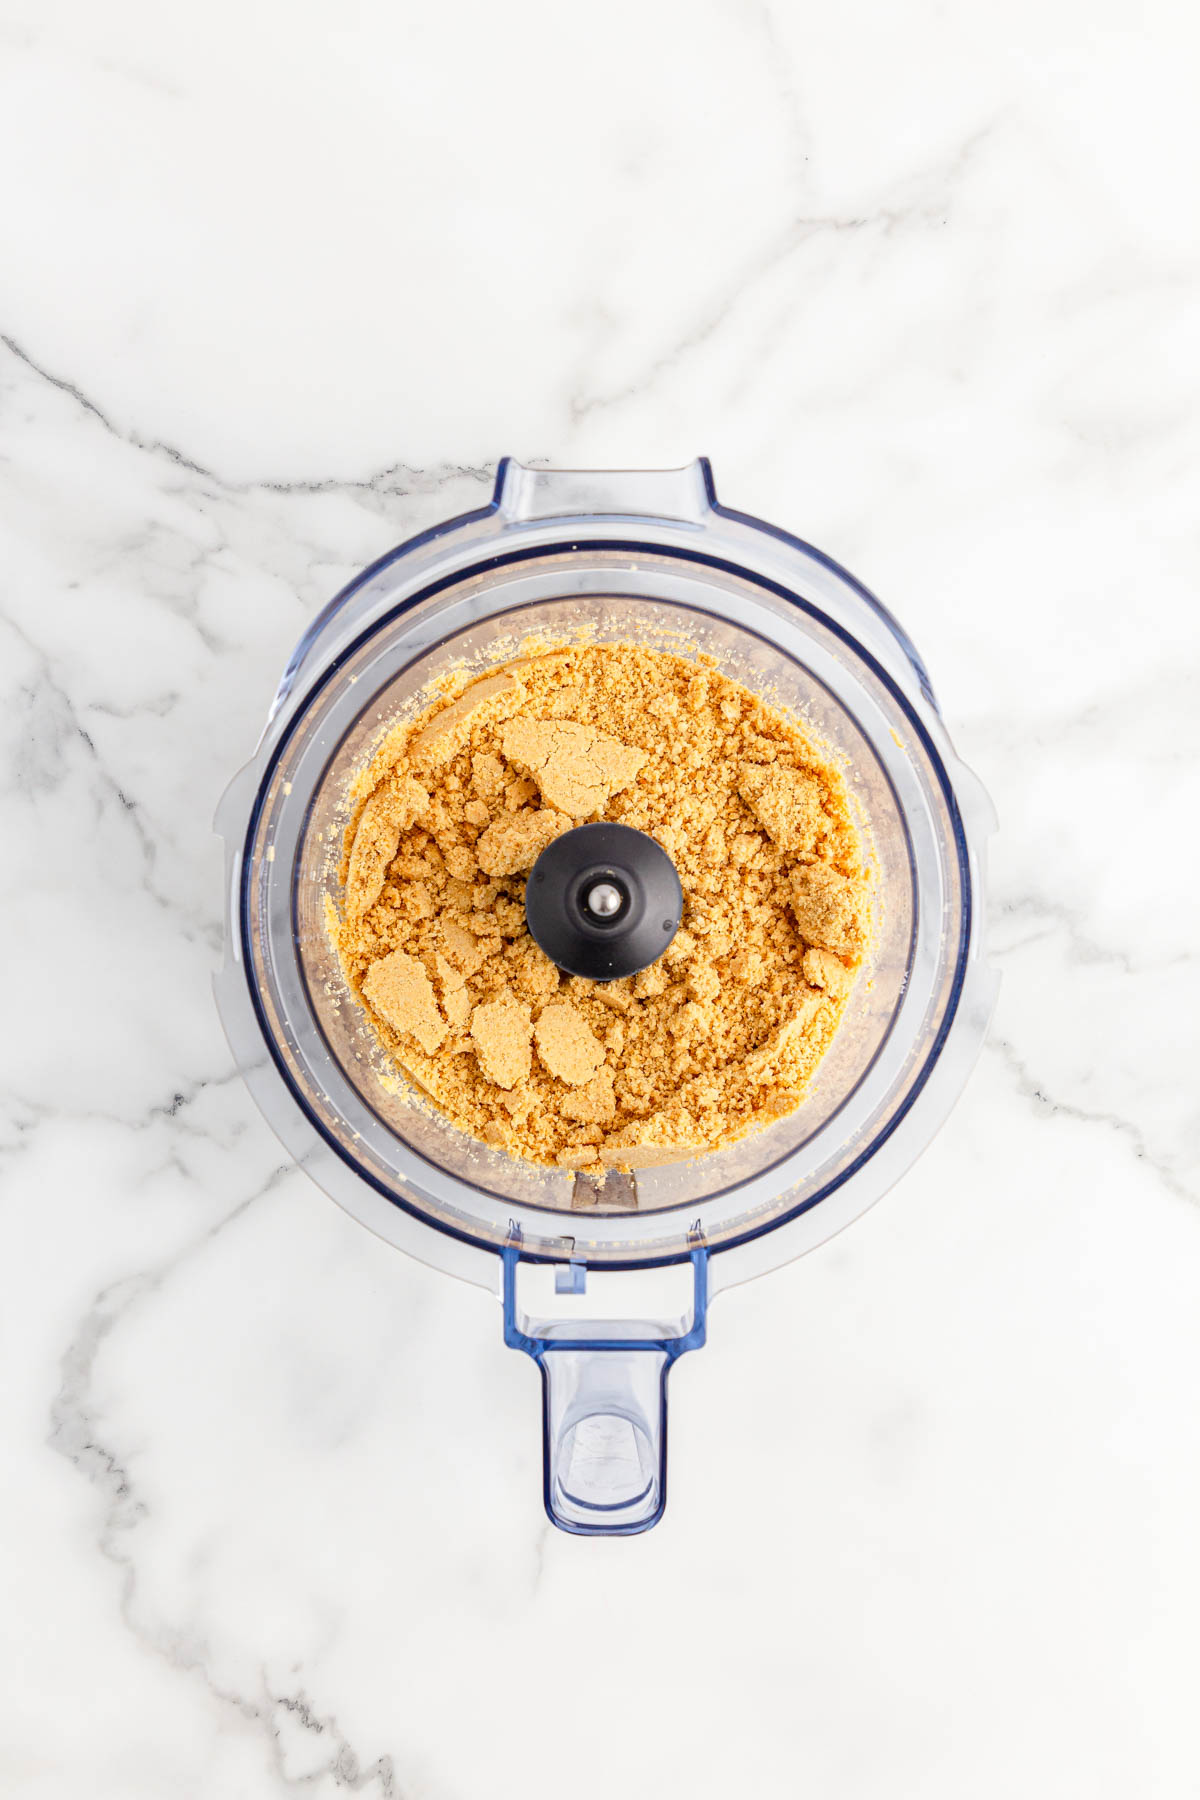 Golden Oreo cookies in food processor